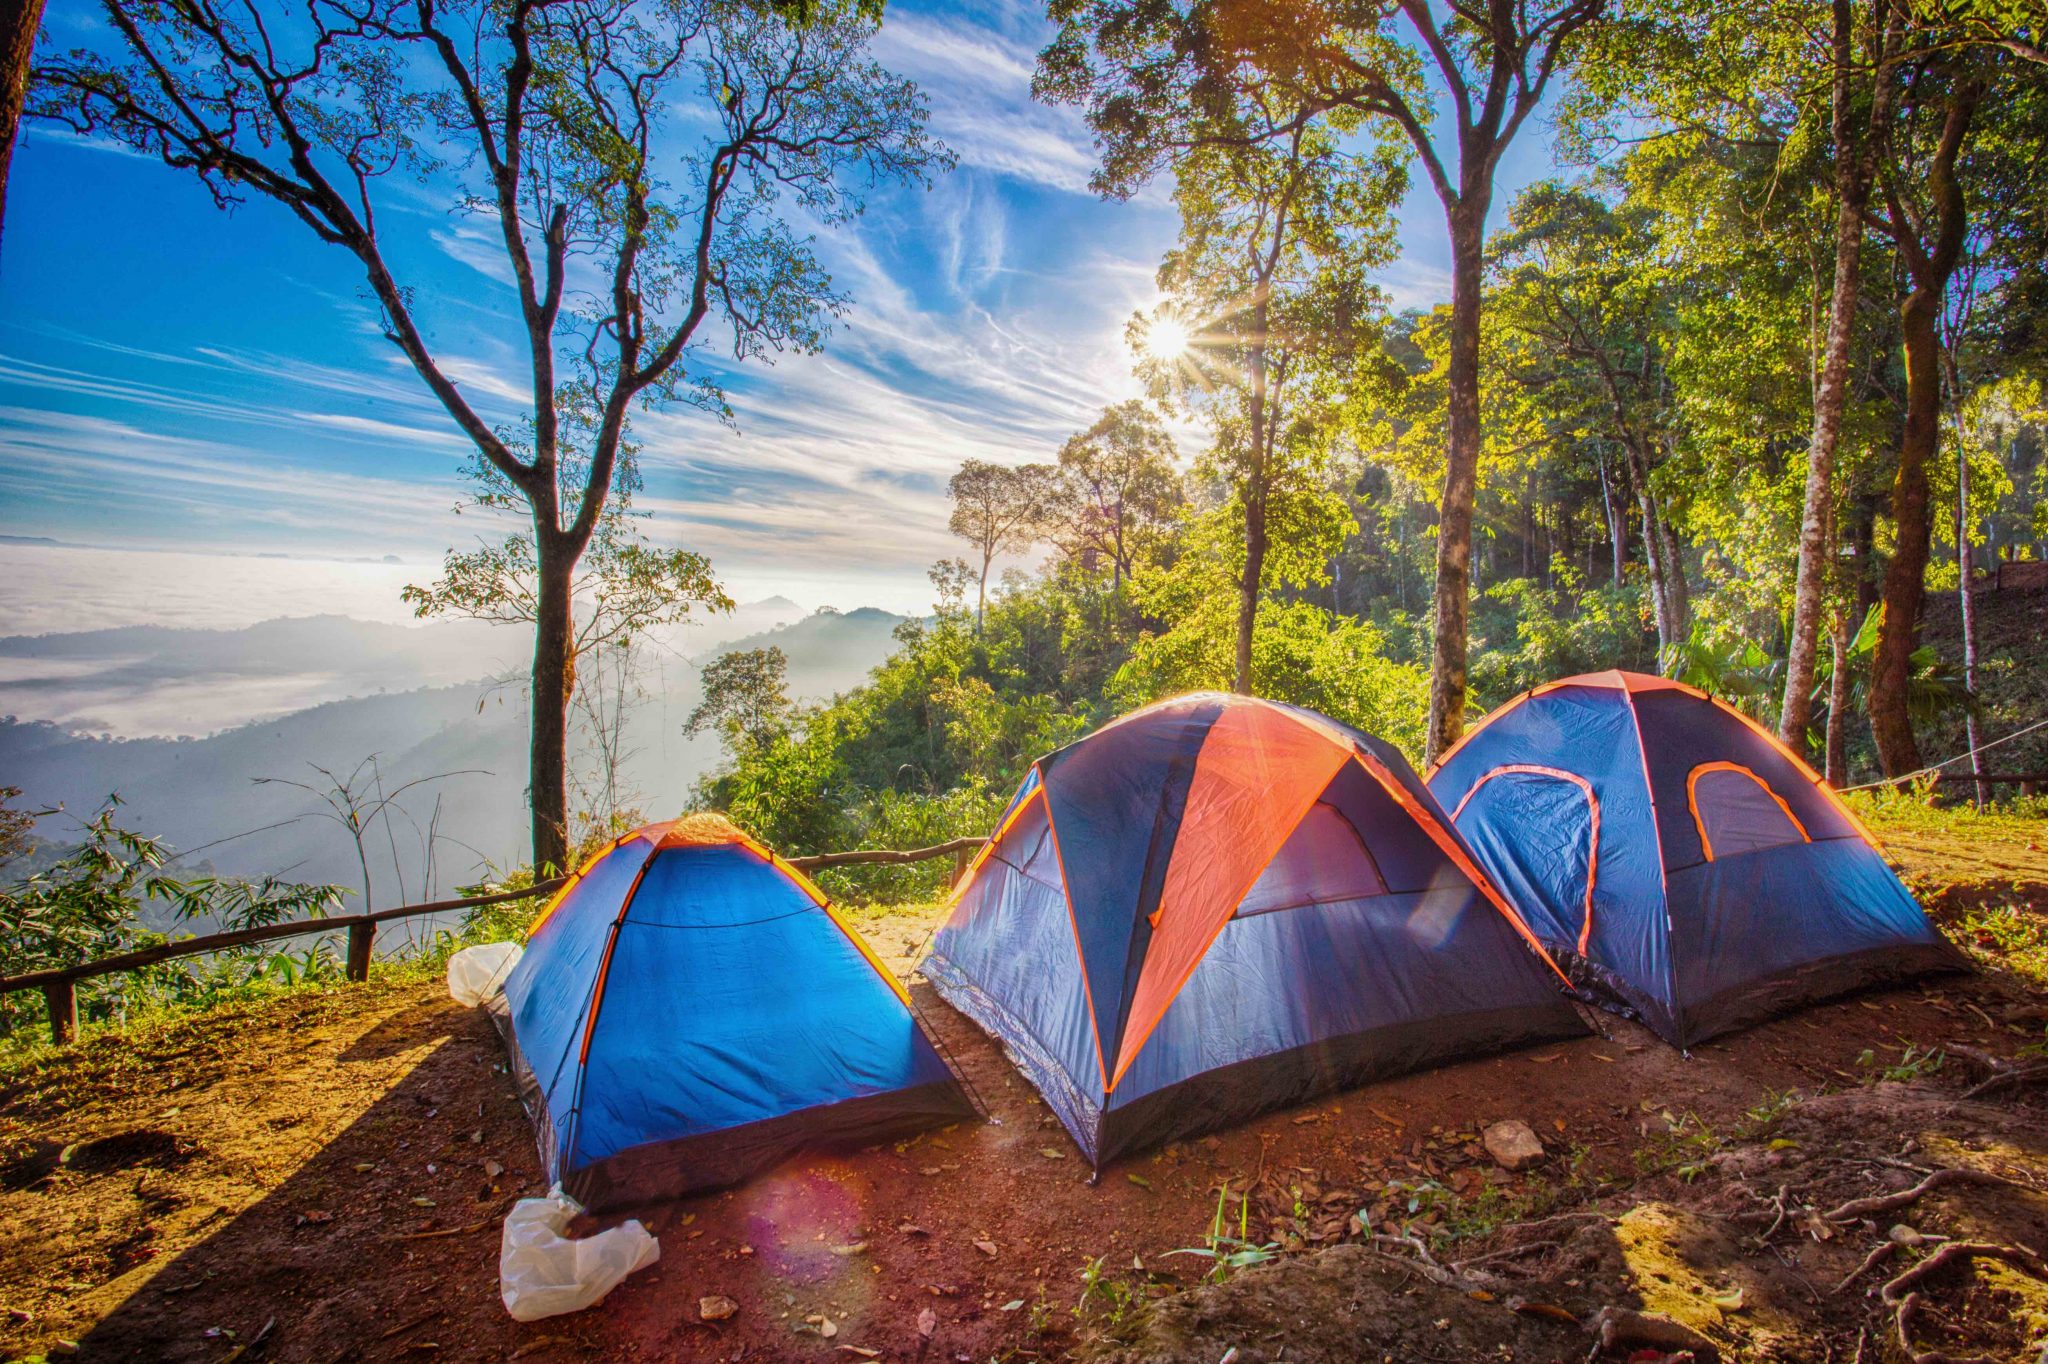 Camp klgd. Палатка Ronin Camp. Палатка на природе. Туристическая палатка на природе. Палаточный кемпинг.